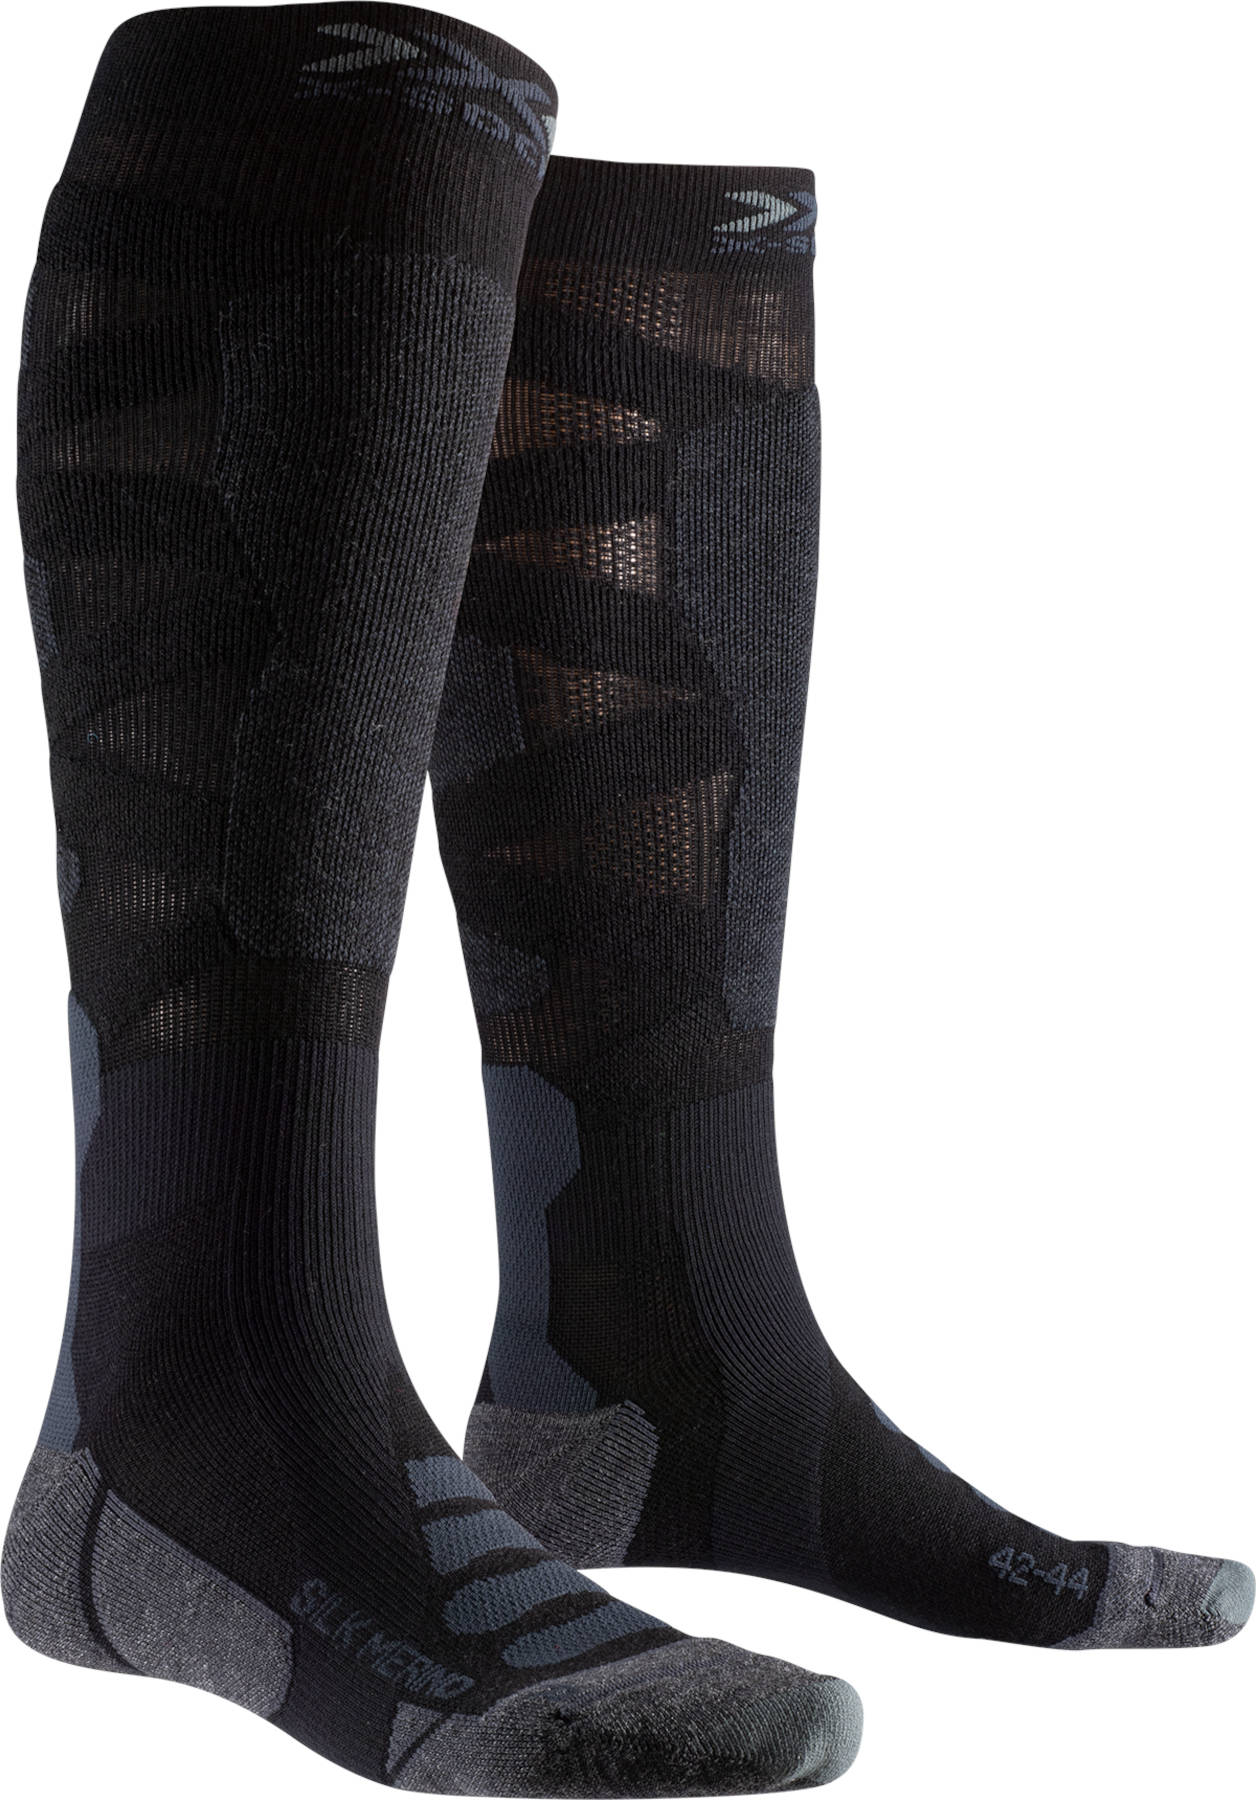 Productfoto van X-Socks Ski Silk Merino 4.0 Sokken - black/black/dark grey melange